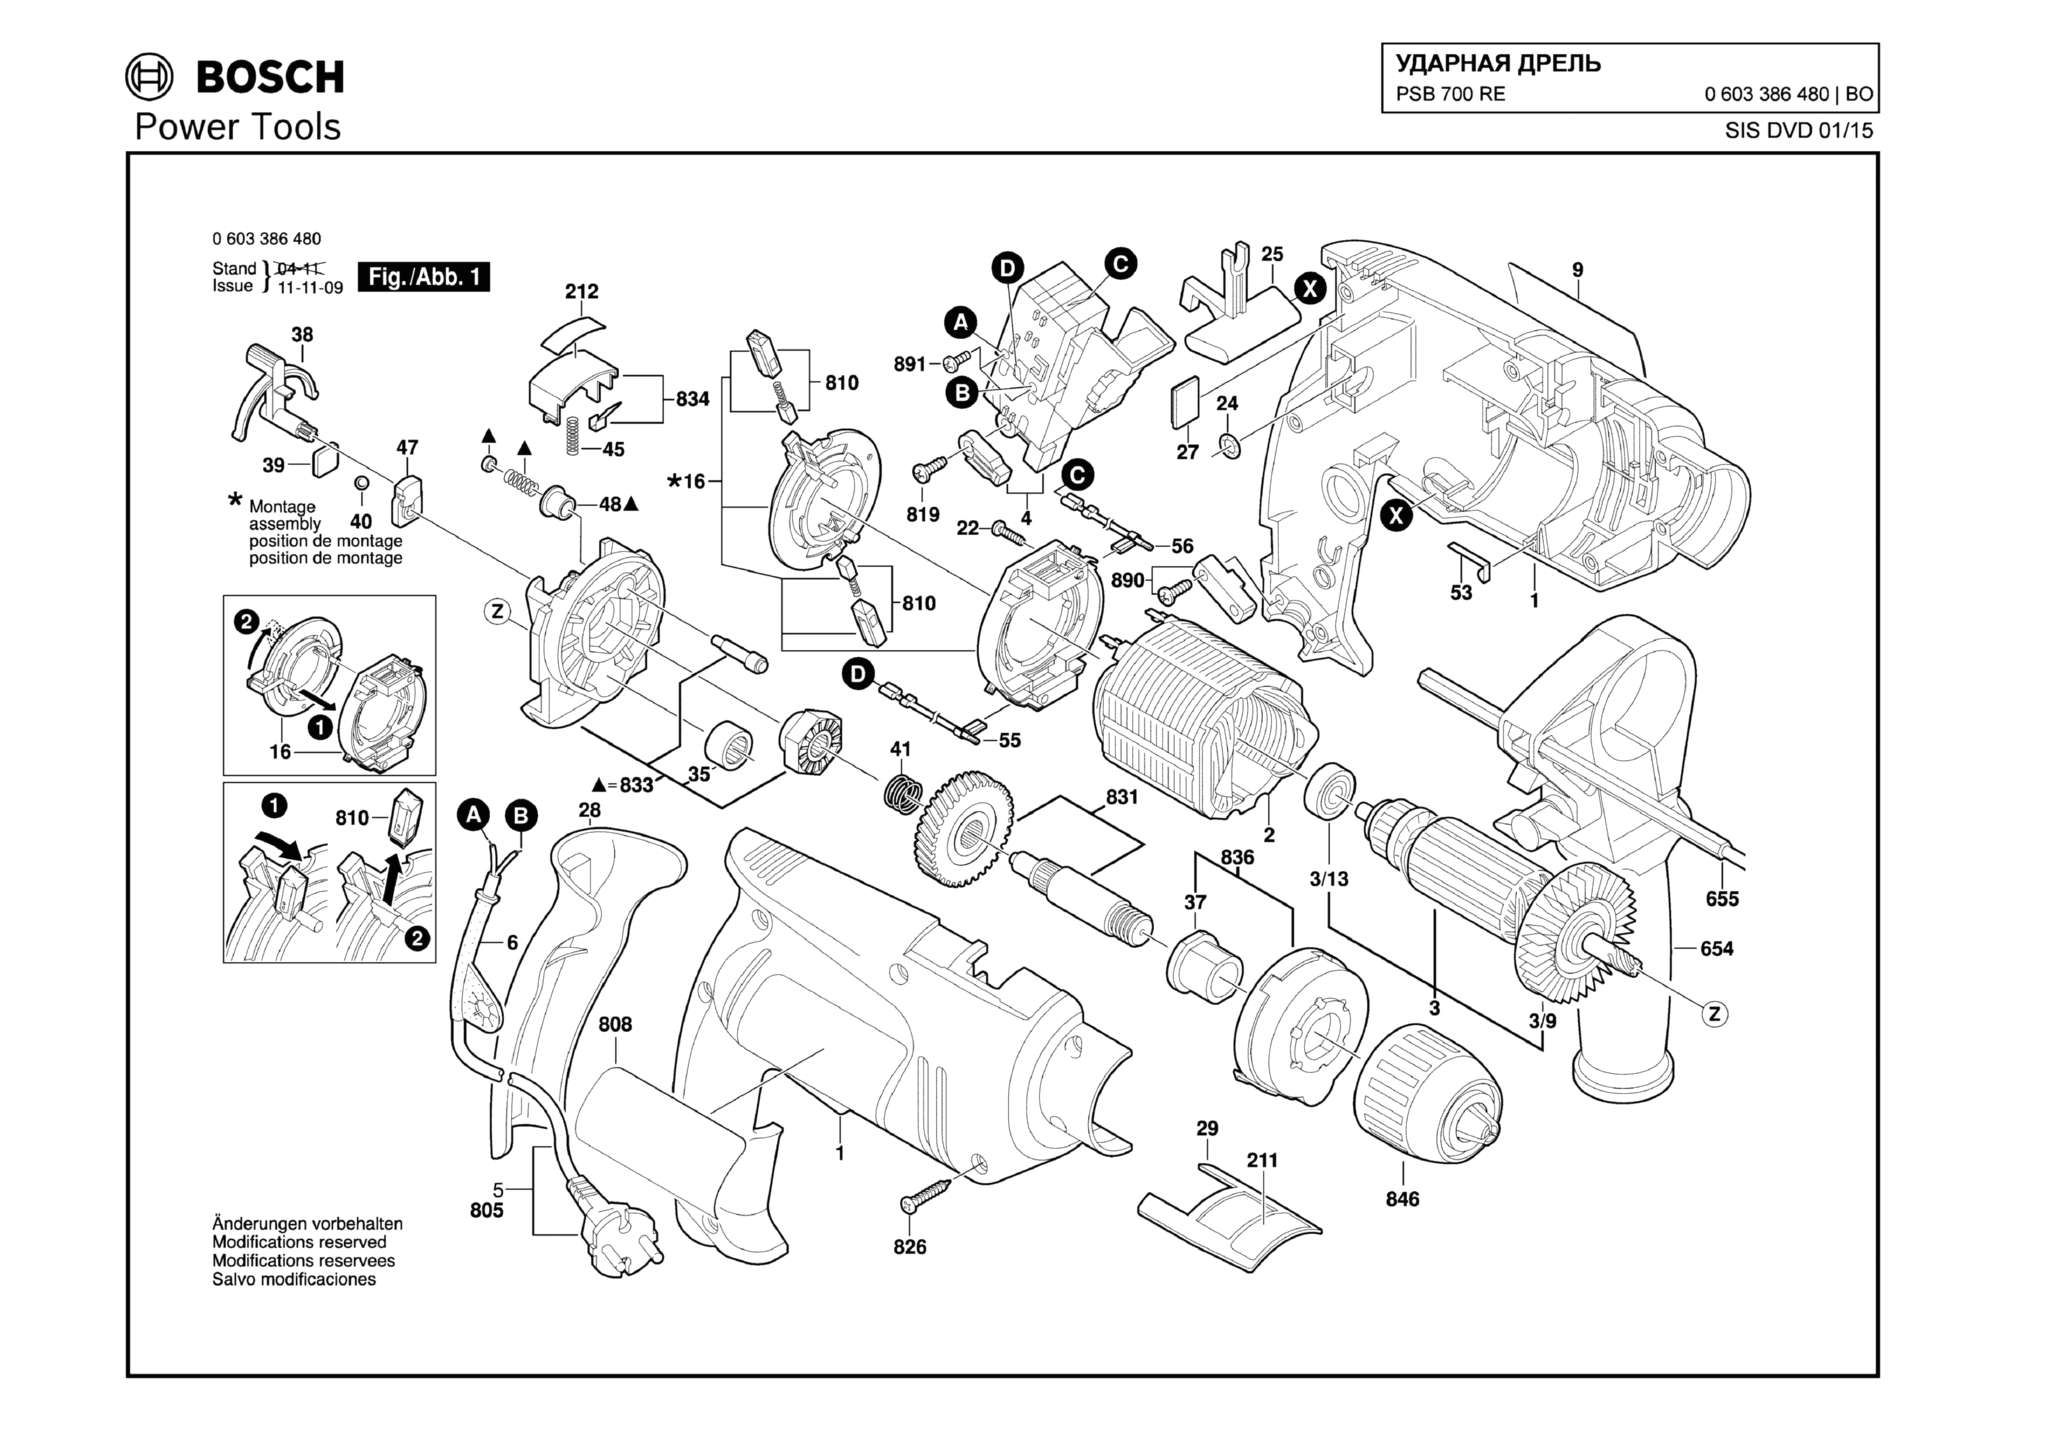 Запчасти, схема и деталировка Bosch PSB 700 RE (ТИП 0603386480)